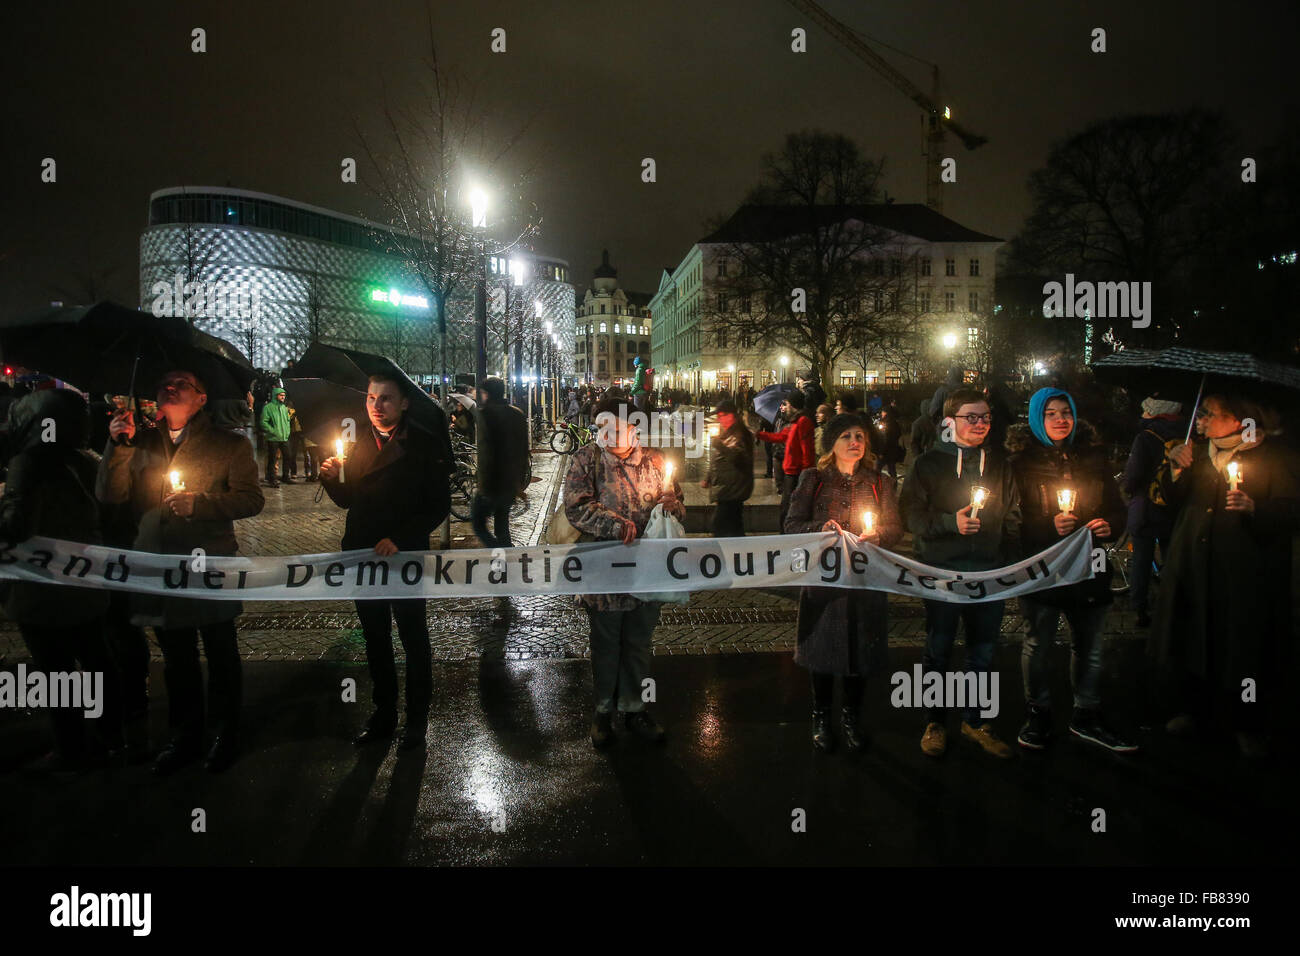 (160112)-- LEIPZIG, 12 janvier 2016(AFP)-- gens tenant des bougies et une bannière disant 'courage' assister à un rassemblement, à Leipzig, en Allemagne, le 11 janvier 2016. Formant un 'lumières' kilomètres de longueur, des milliers de personnes ont participé à un rassemblement contre le mouvement anti-Islam Legida dans l'est de la ville allemande de Leipzig lundi soir. (Xinhua/Zhang Fan)(l'azp) Banque D'Images